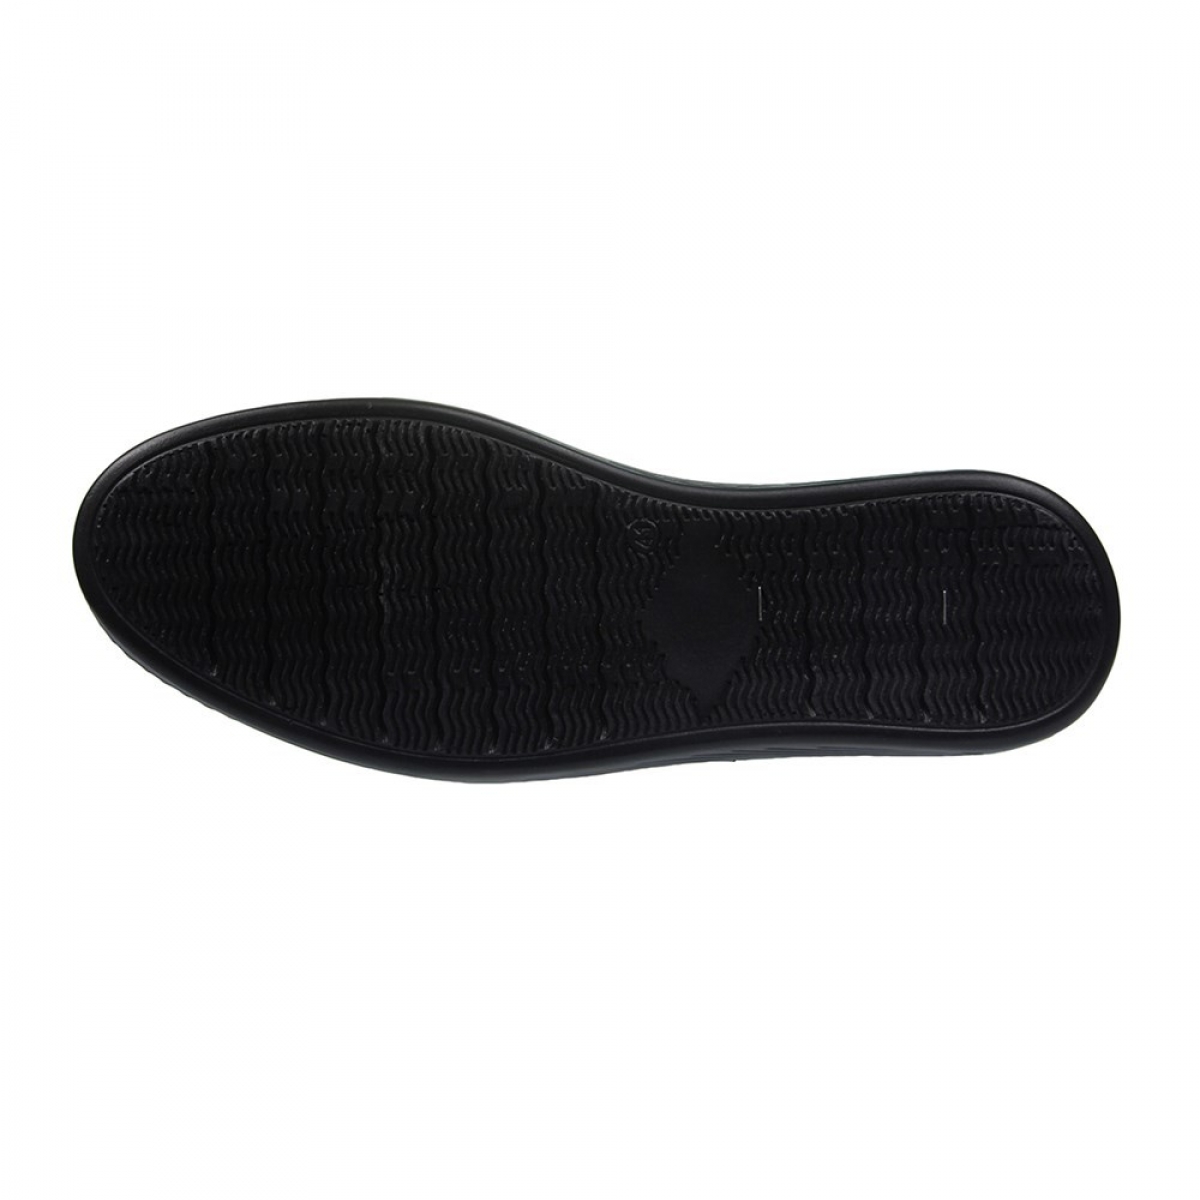 Flo Erkek Deri Siyah Casual Ayakkabı 211-4207MR 100. 4